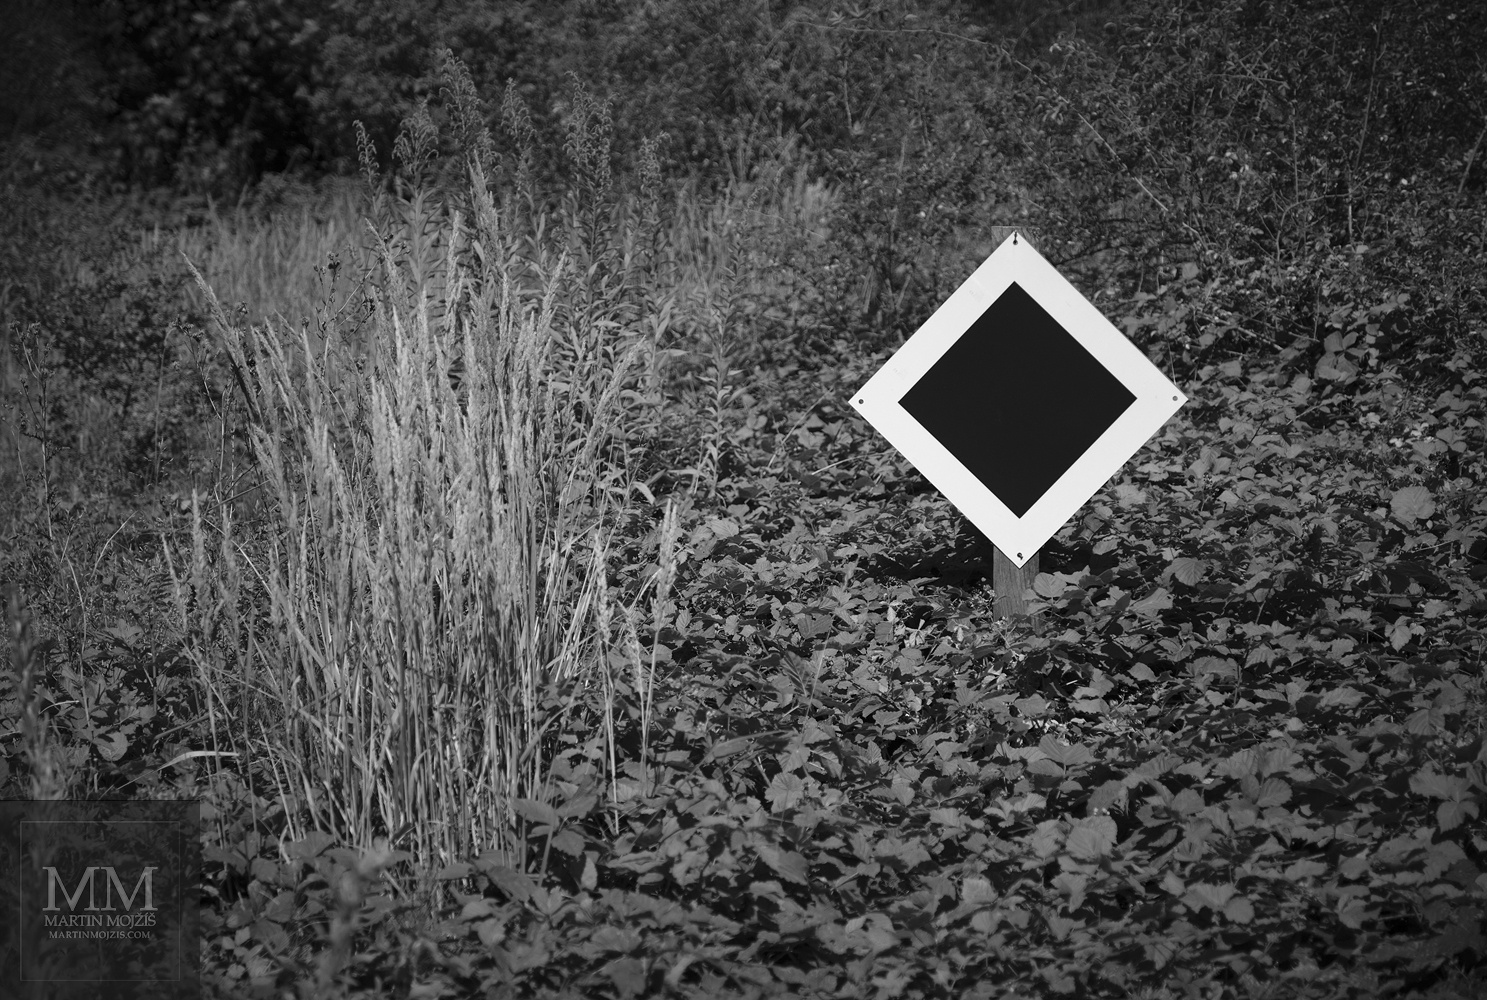 Železniční symbol konec trati obklopený travami s listy keřů. Umělecká černobílá fotografie s názvem ZMIZELÉ KOLEJE II. Fotograf Martin Mojžíš.